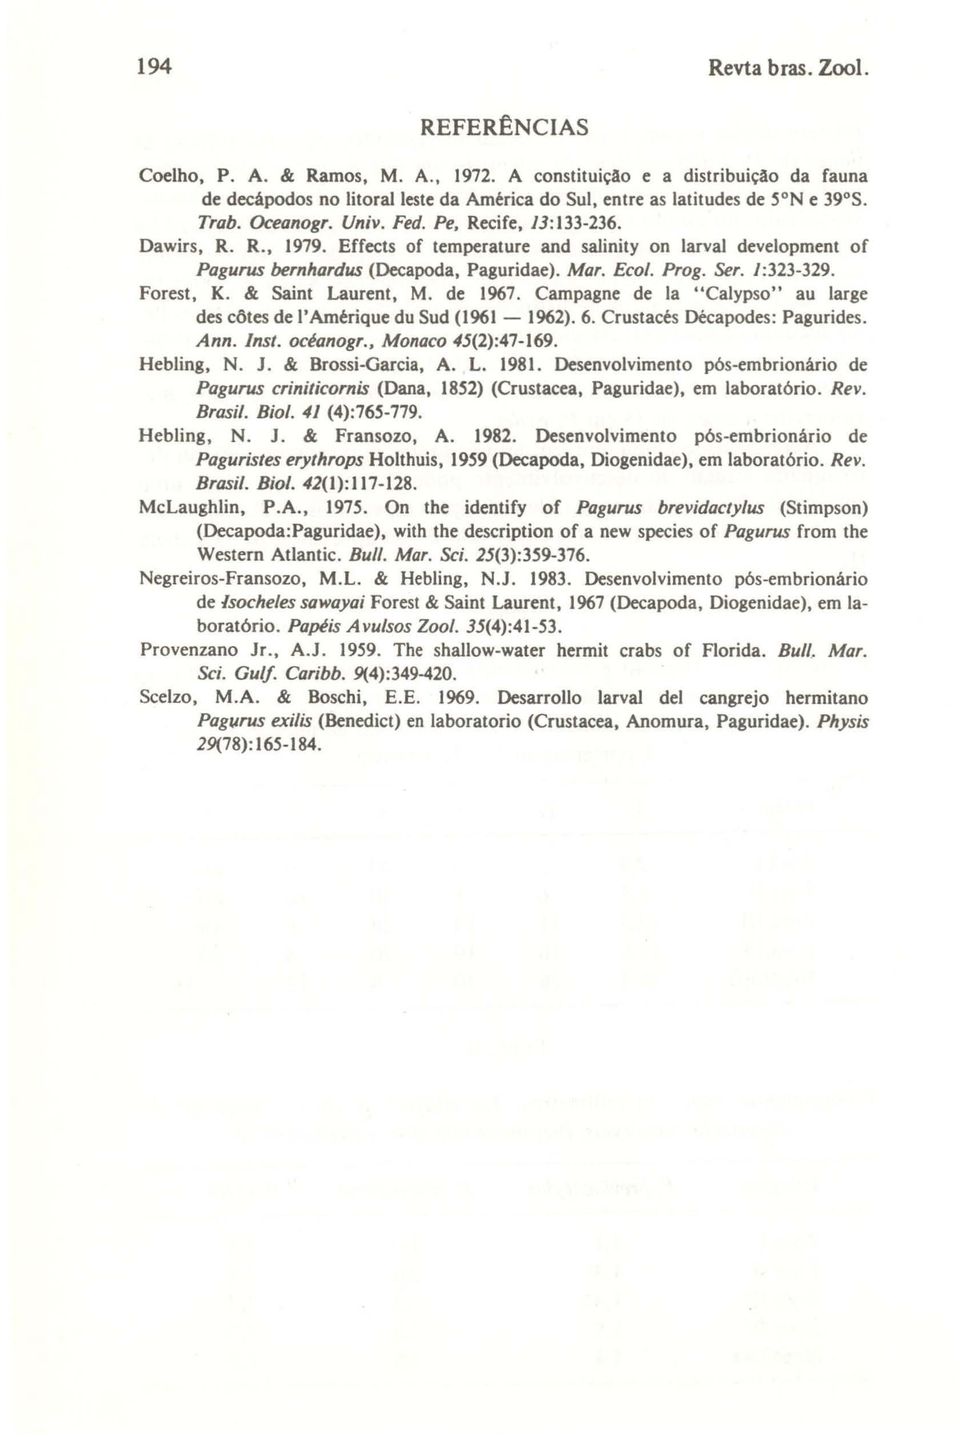 / :323-329. Forest, K. & Saint Laurent, M. de 1967. Campagne de la "Calypso" au large des côtes de I' Amérique du Sud (1961-1962). 6. Crustacés Décapodes: Pagurides. Ann. Inst. océanogr.